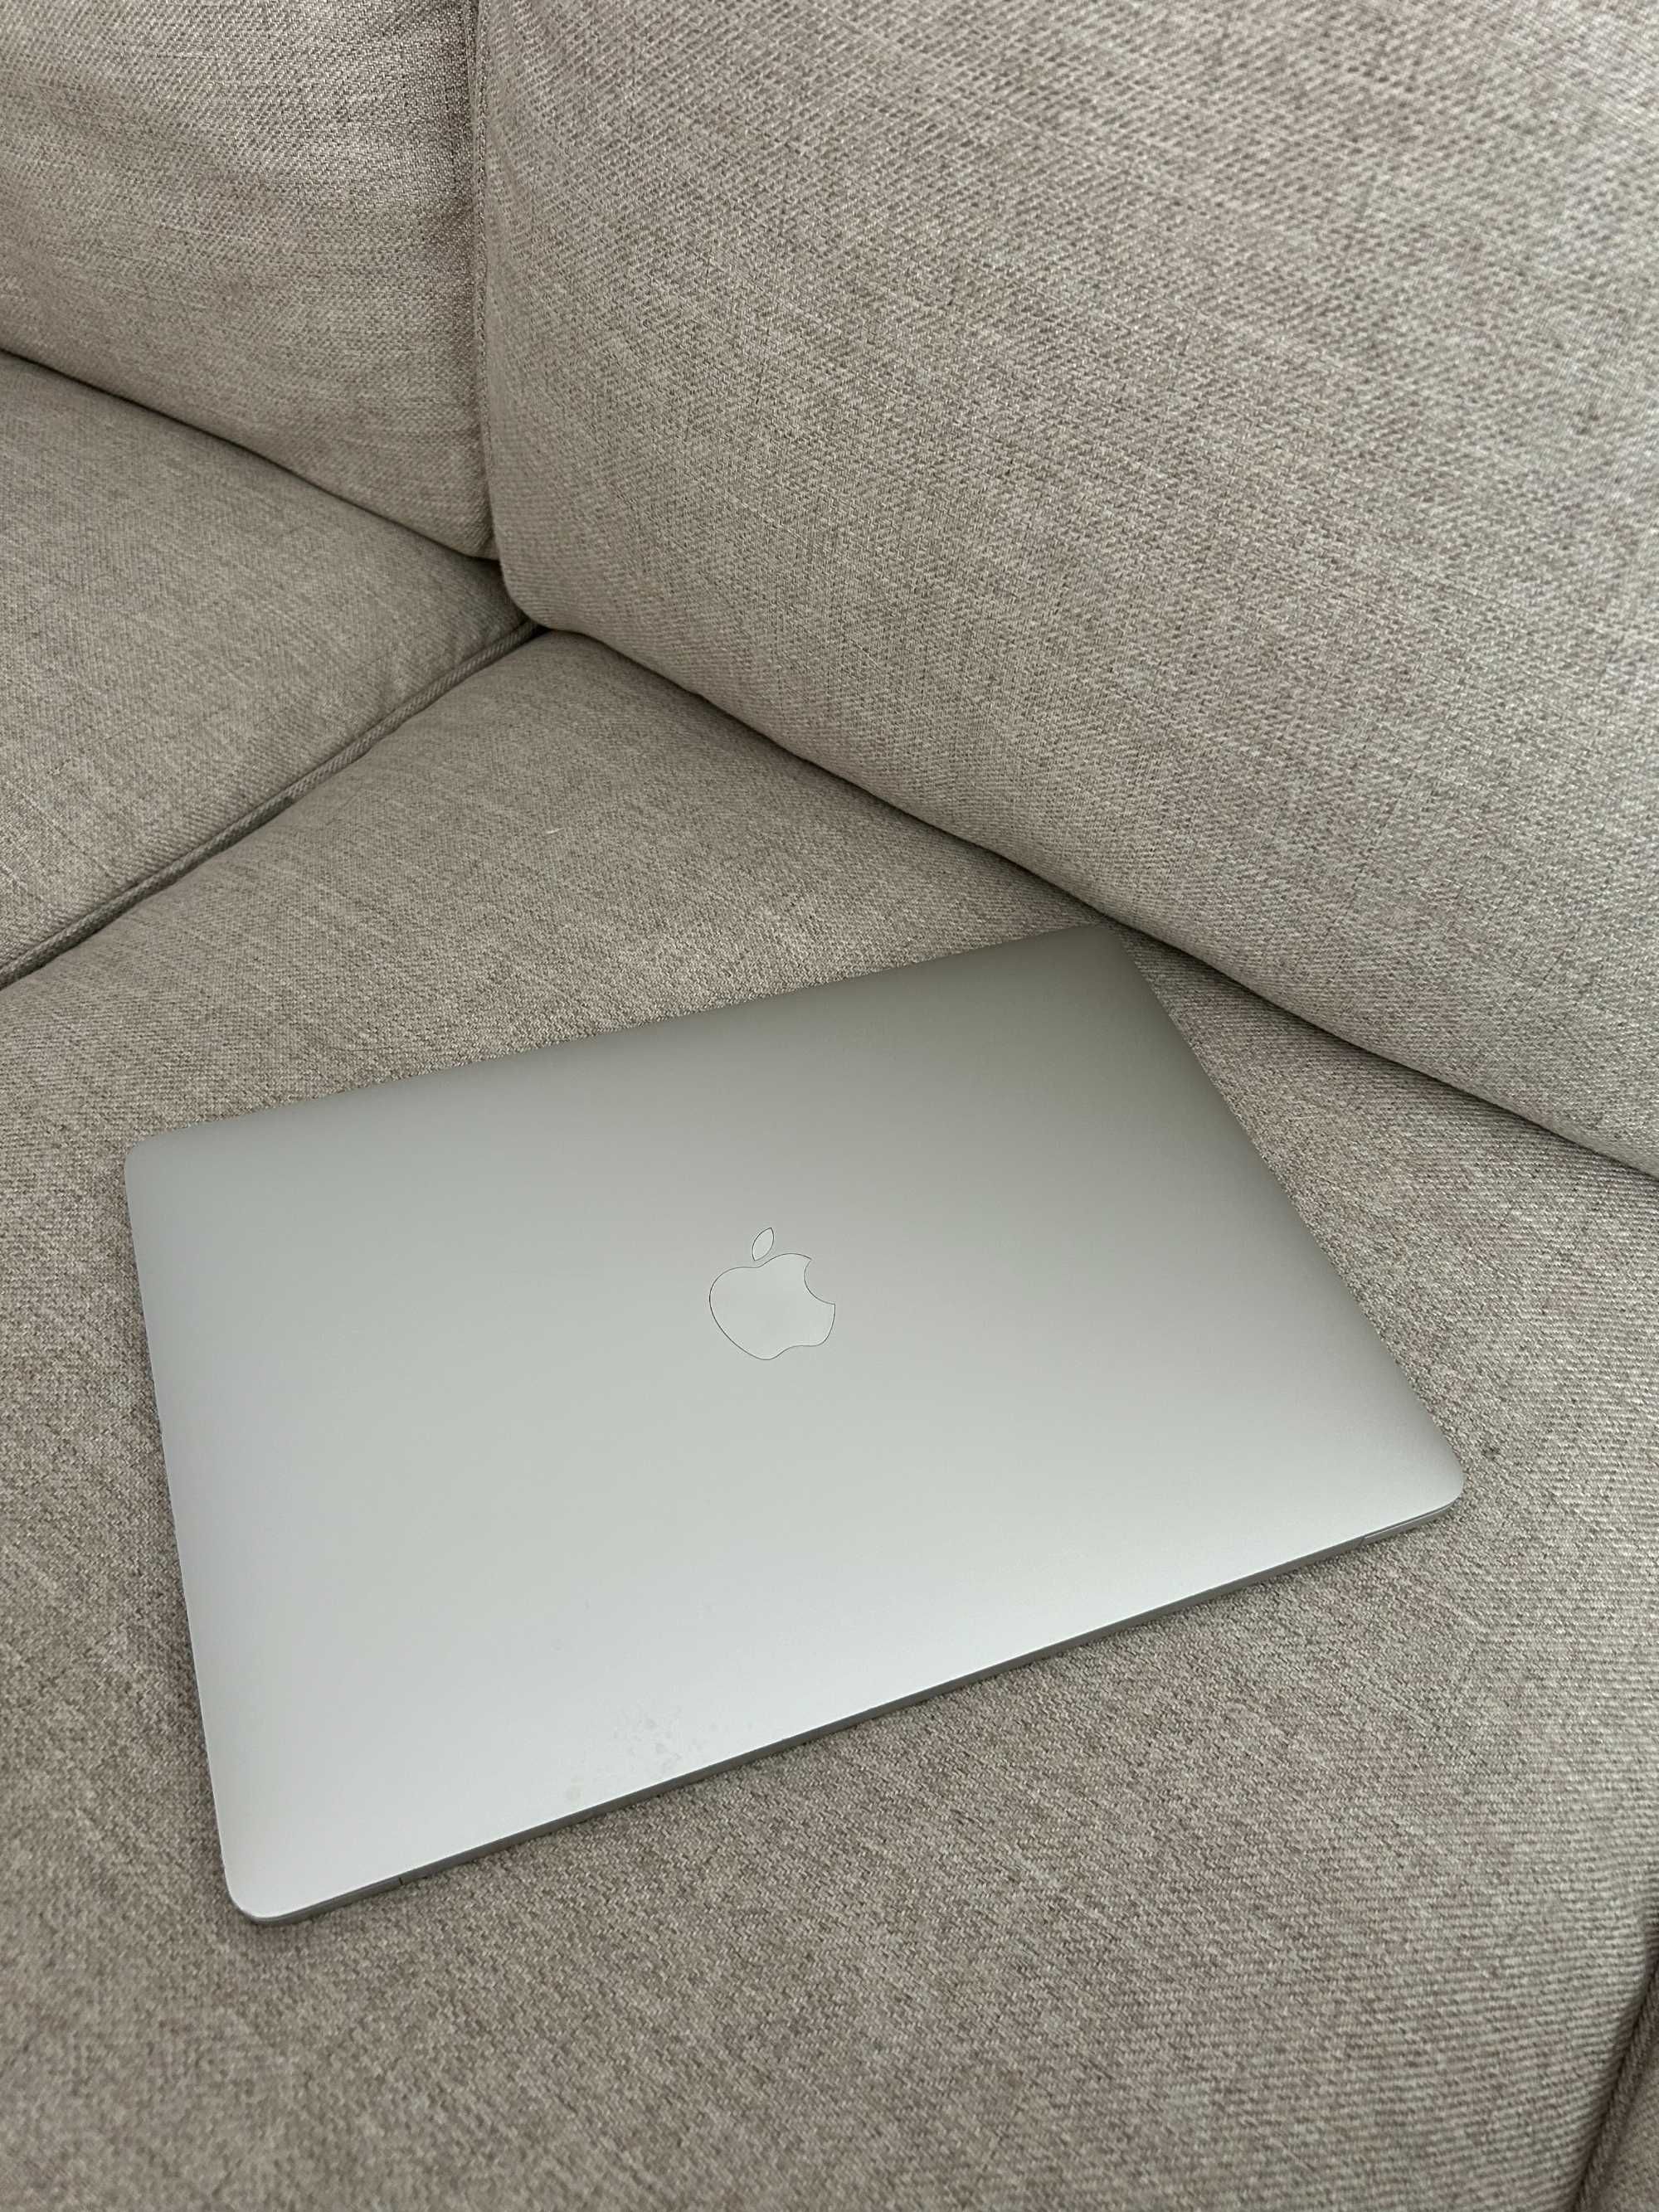 MacBook Pro 13" cu Touch bar - 2016